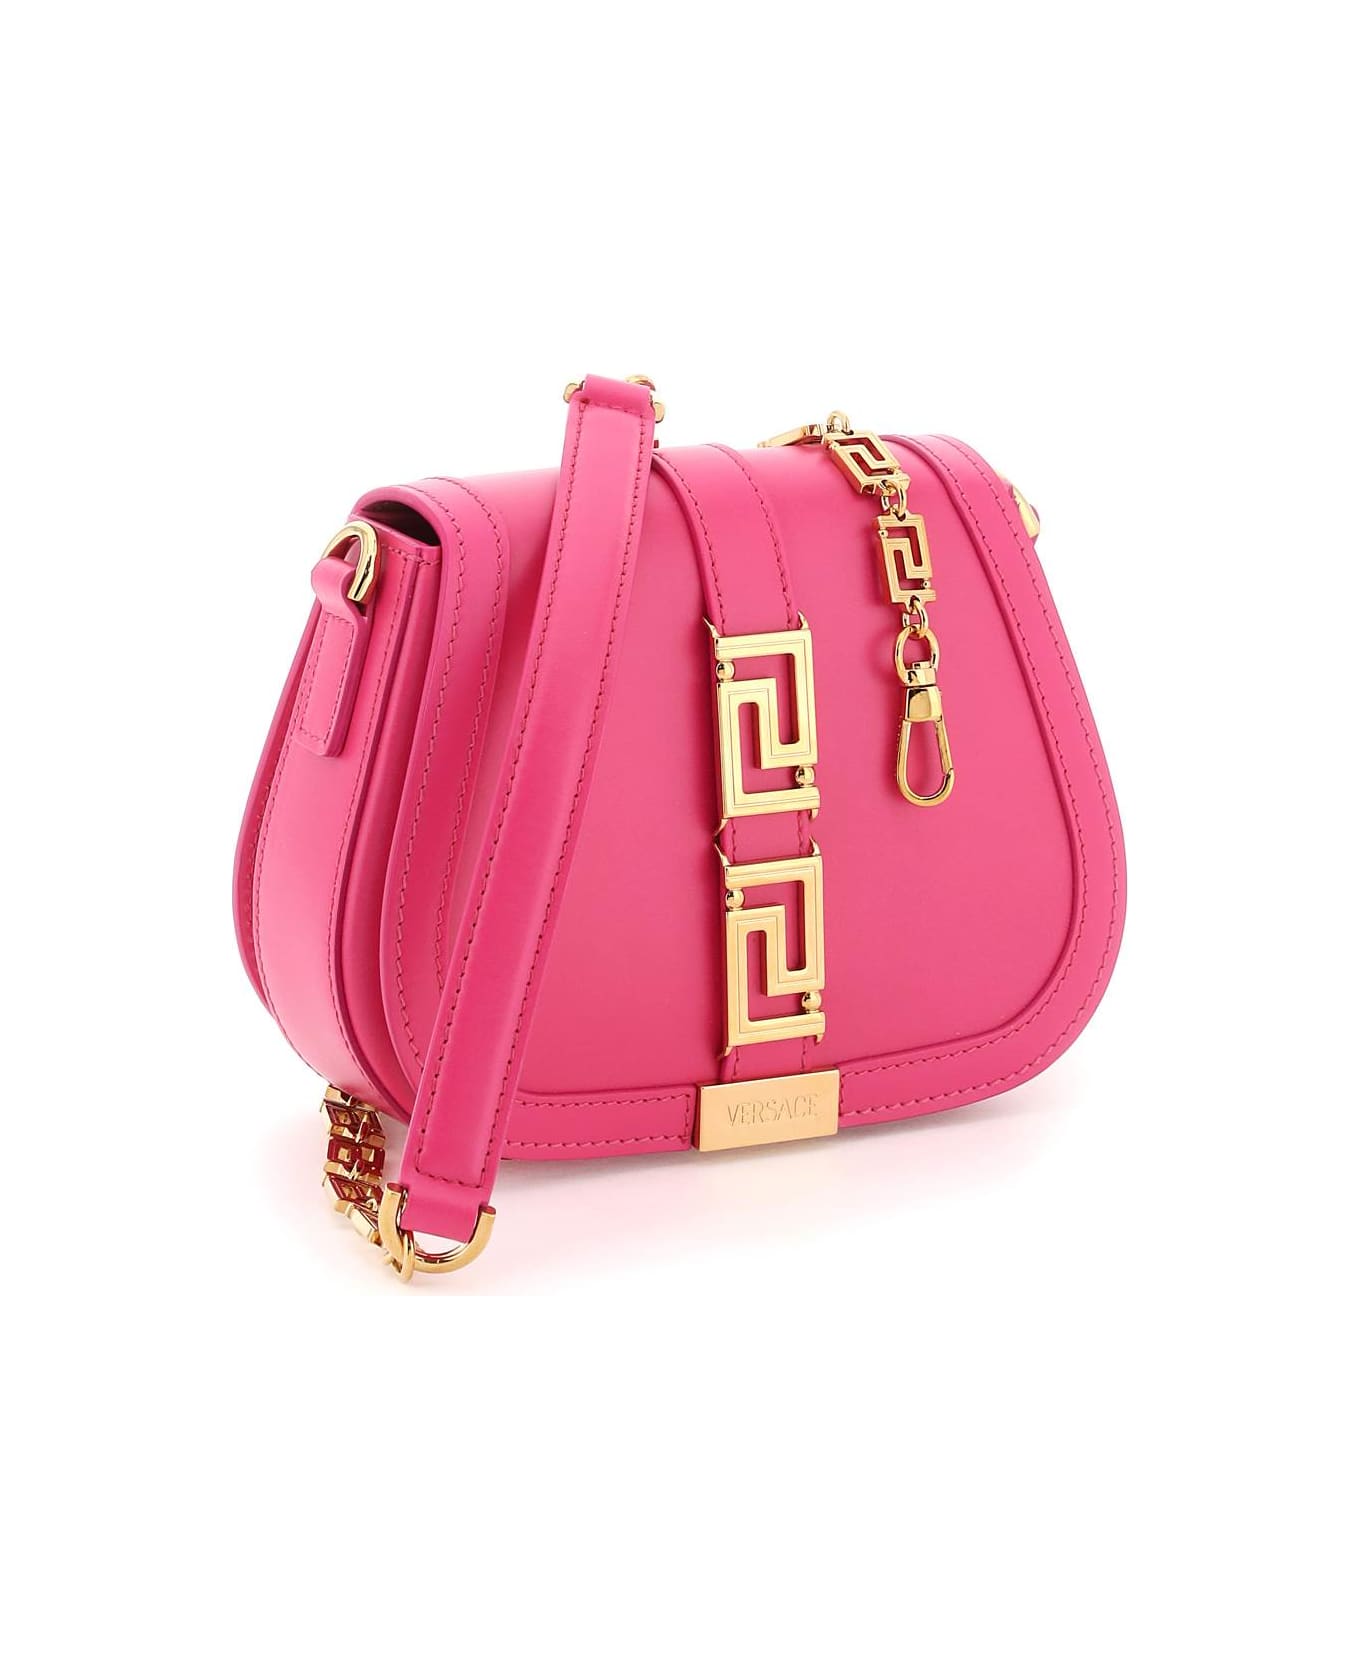 Versace Greca Goddess Leather Shoulder Bag - Pink トートバッグ